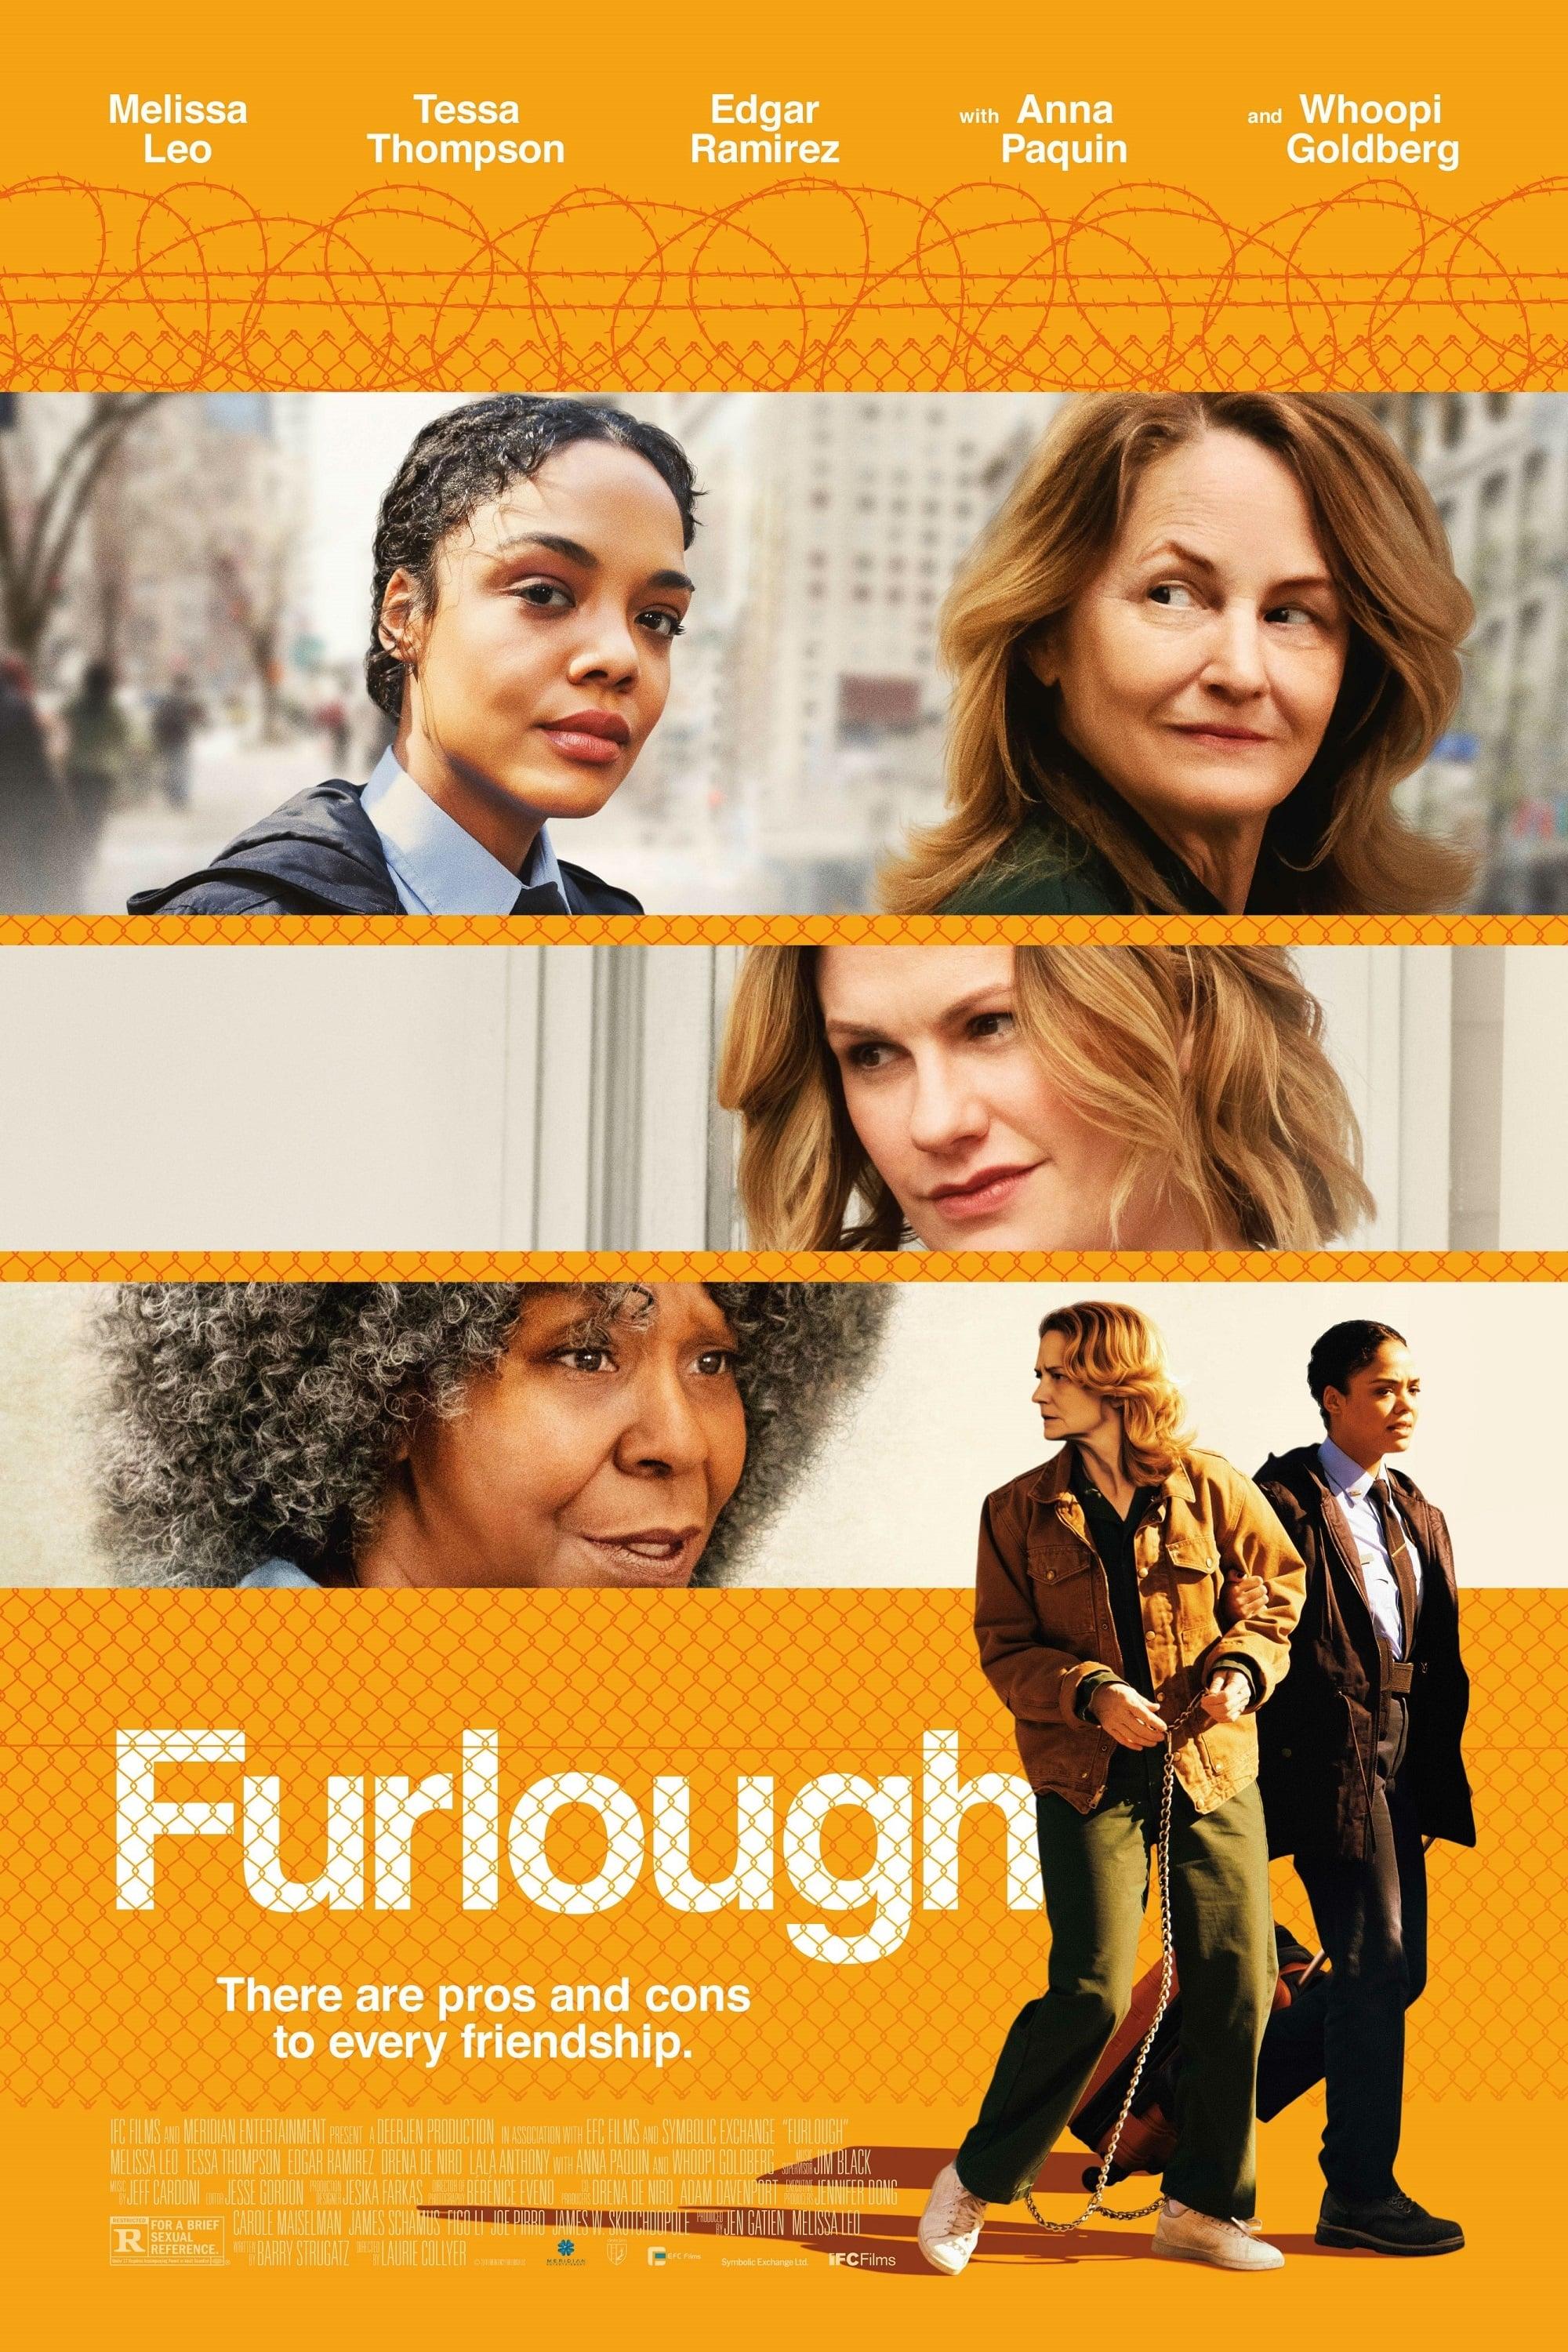 Furlough poster